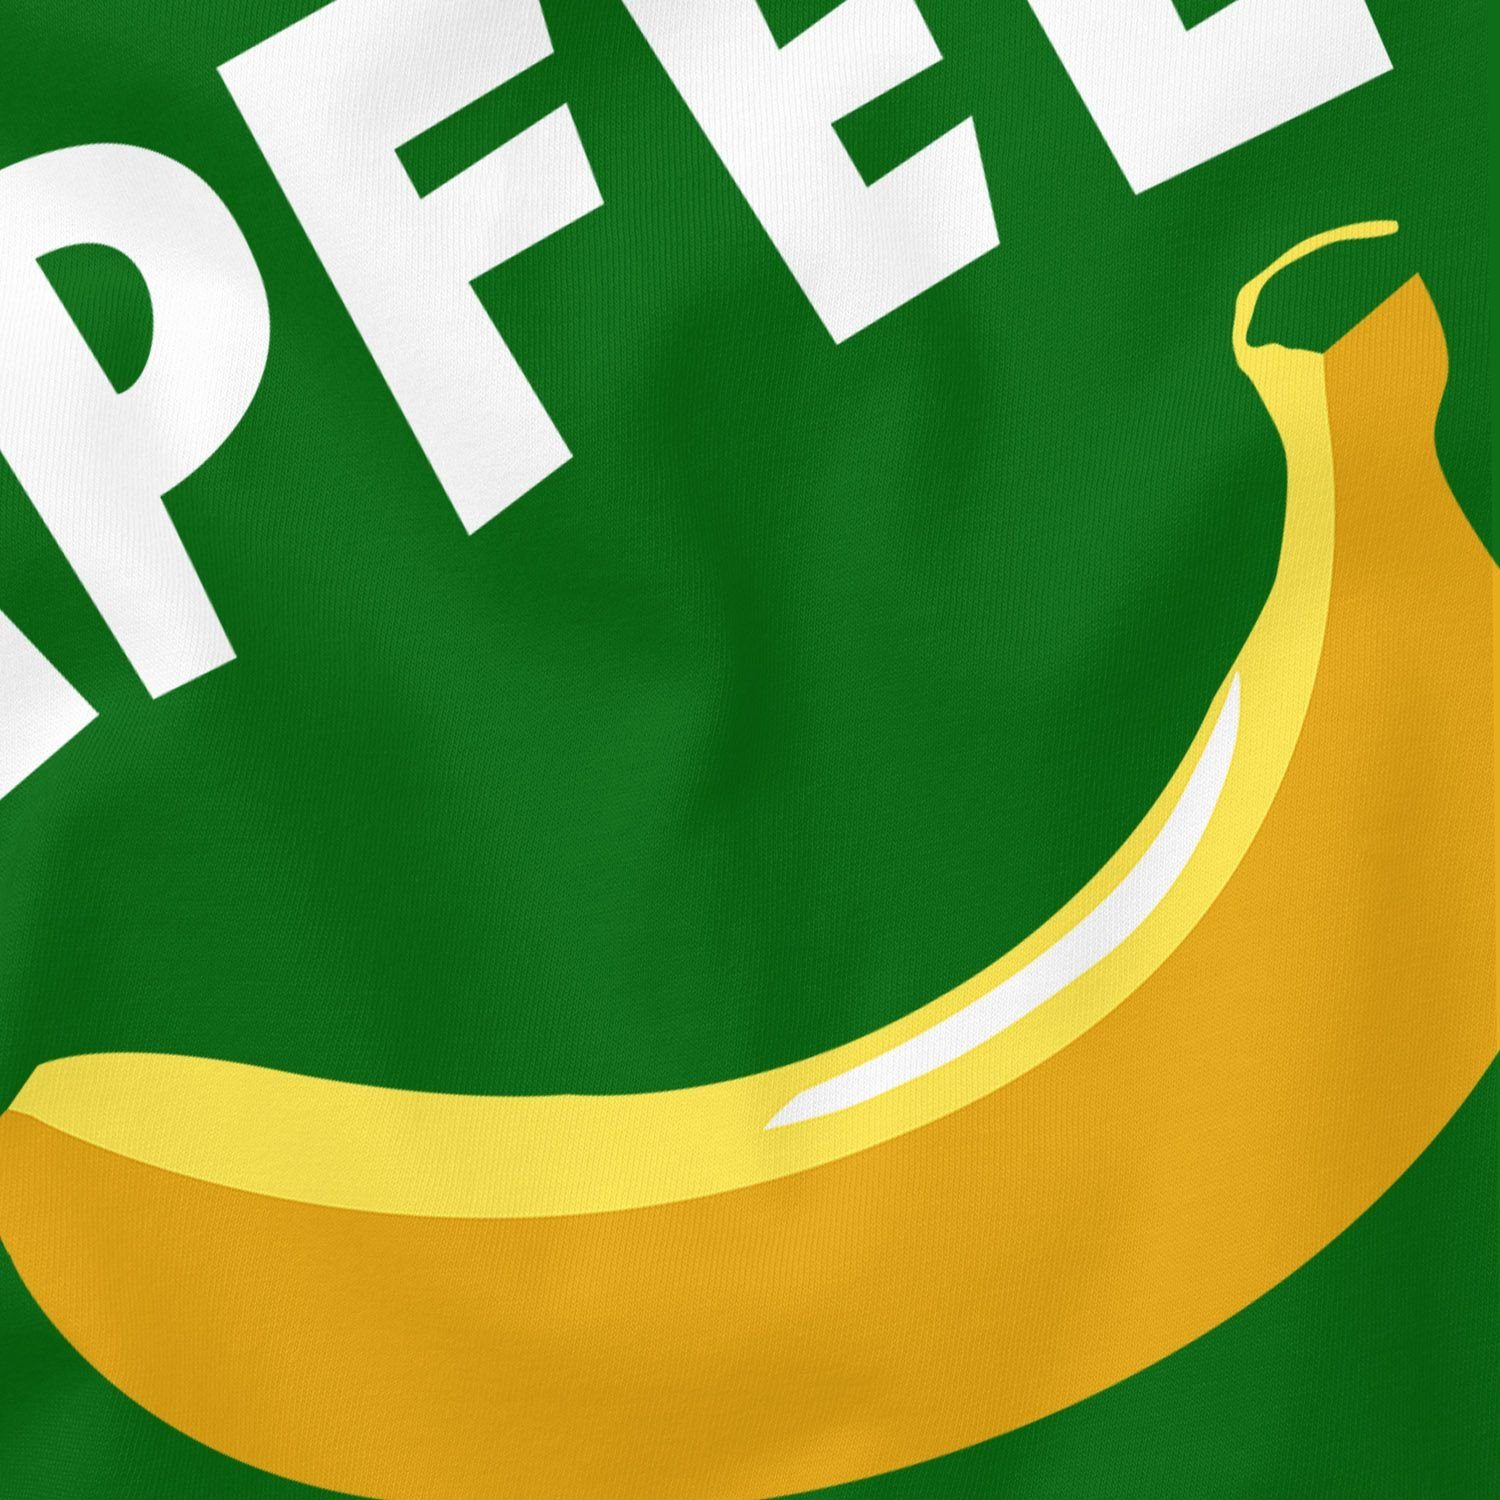 MoonWorks Print-Shirt Herren T-Shirt lustiger Spruch Apfel Fun-Shirt Aufdruck lustig Print grün Moonworks® mit Witz Banane Scherz